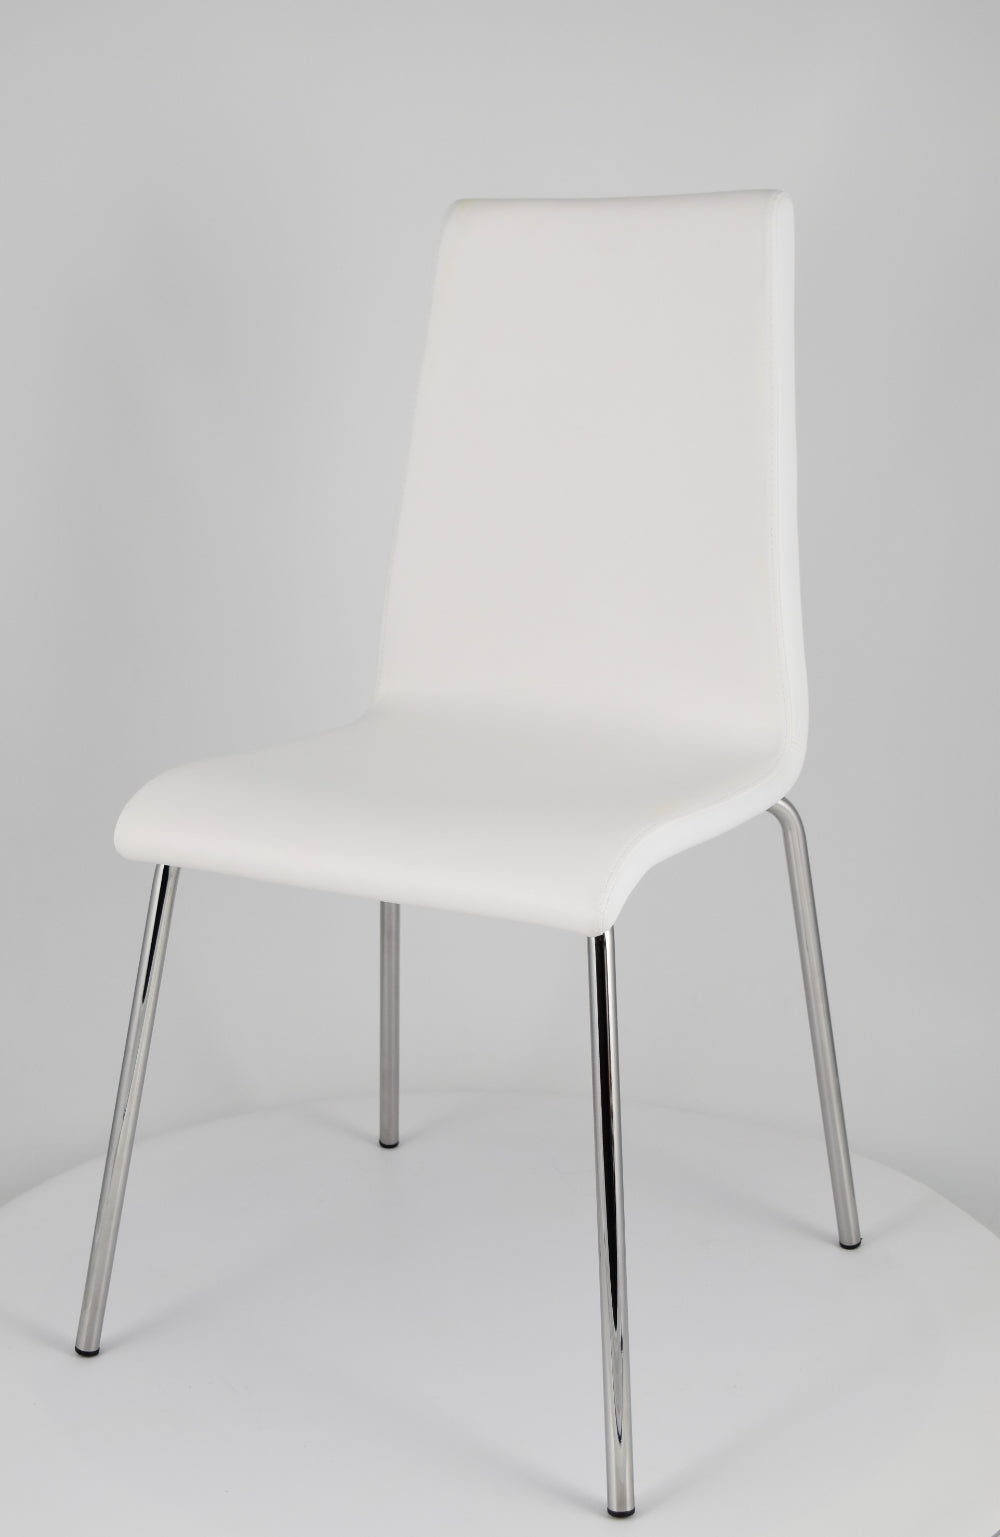 Tommychairs - Set 4 sillas Madrid con Patas de Acero Cromado y Asiento en Madera Multicapa, tapizado en Polipiel Color Blanco